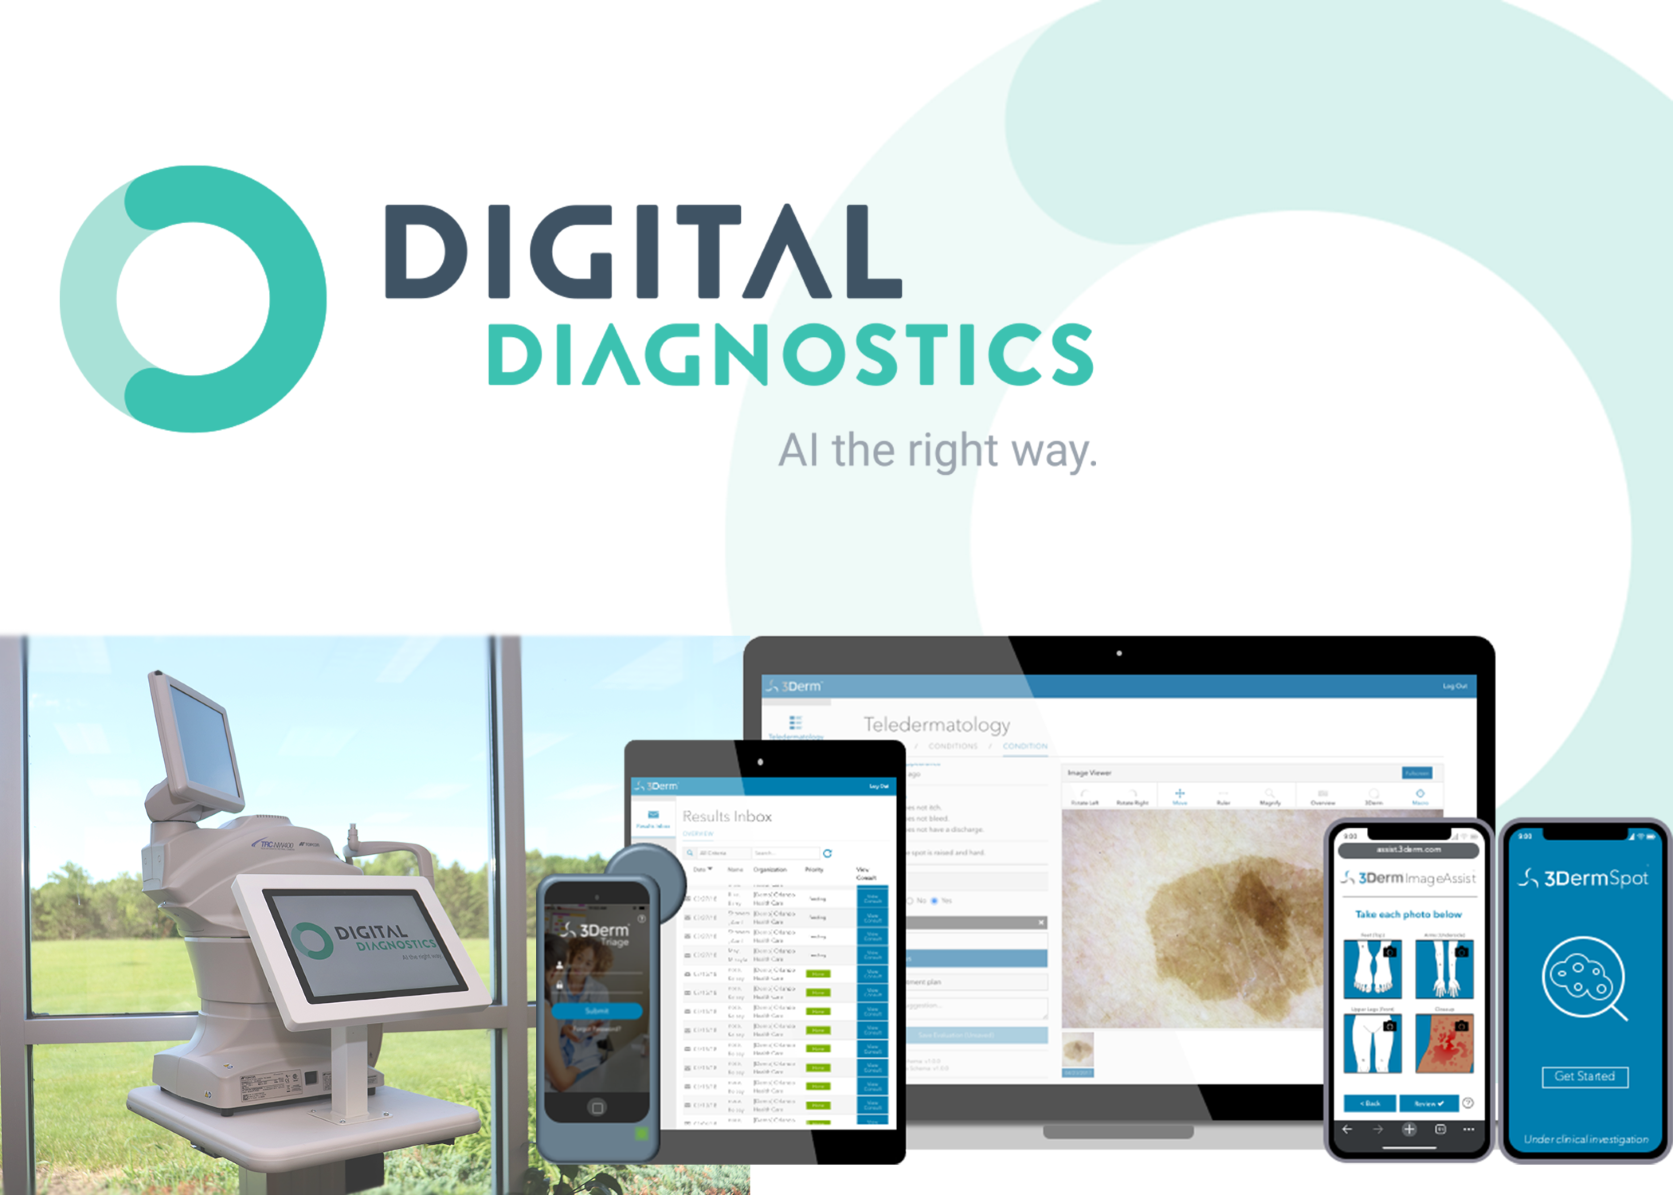 Digital Diagnostics, formerly IDx, Expands Global Impact of Healthcare Autonomous AI with Acquisition of 3Derm Systems, Inc.